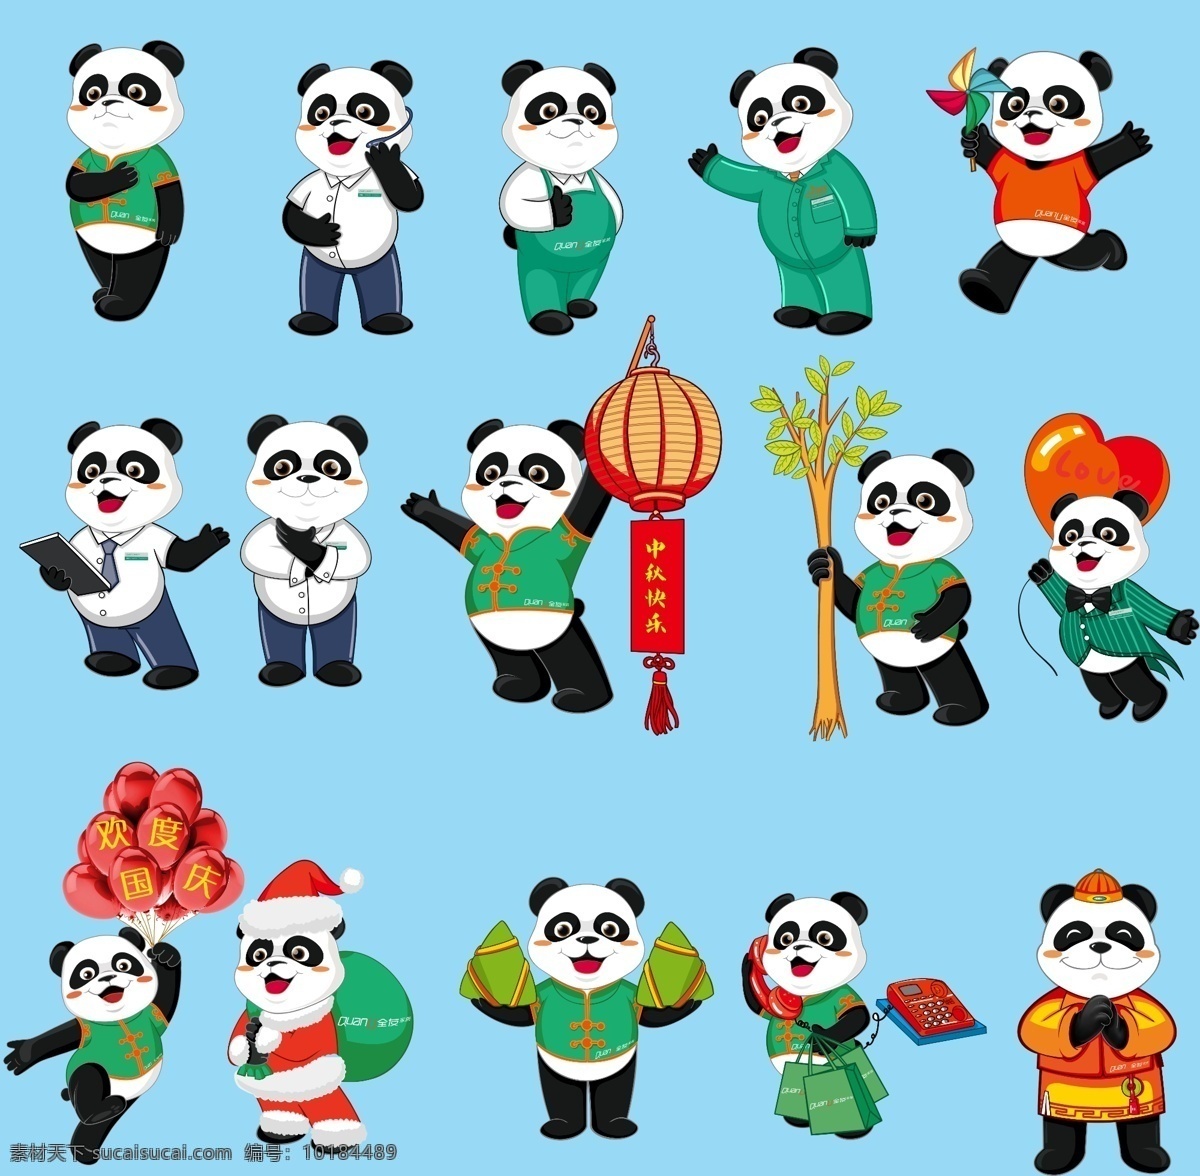 全友家居熊猫 全友 家居 熊猫 全友标志